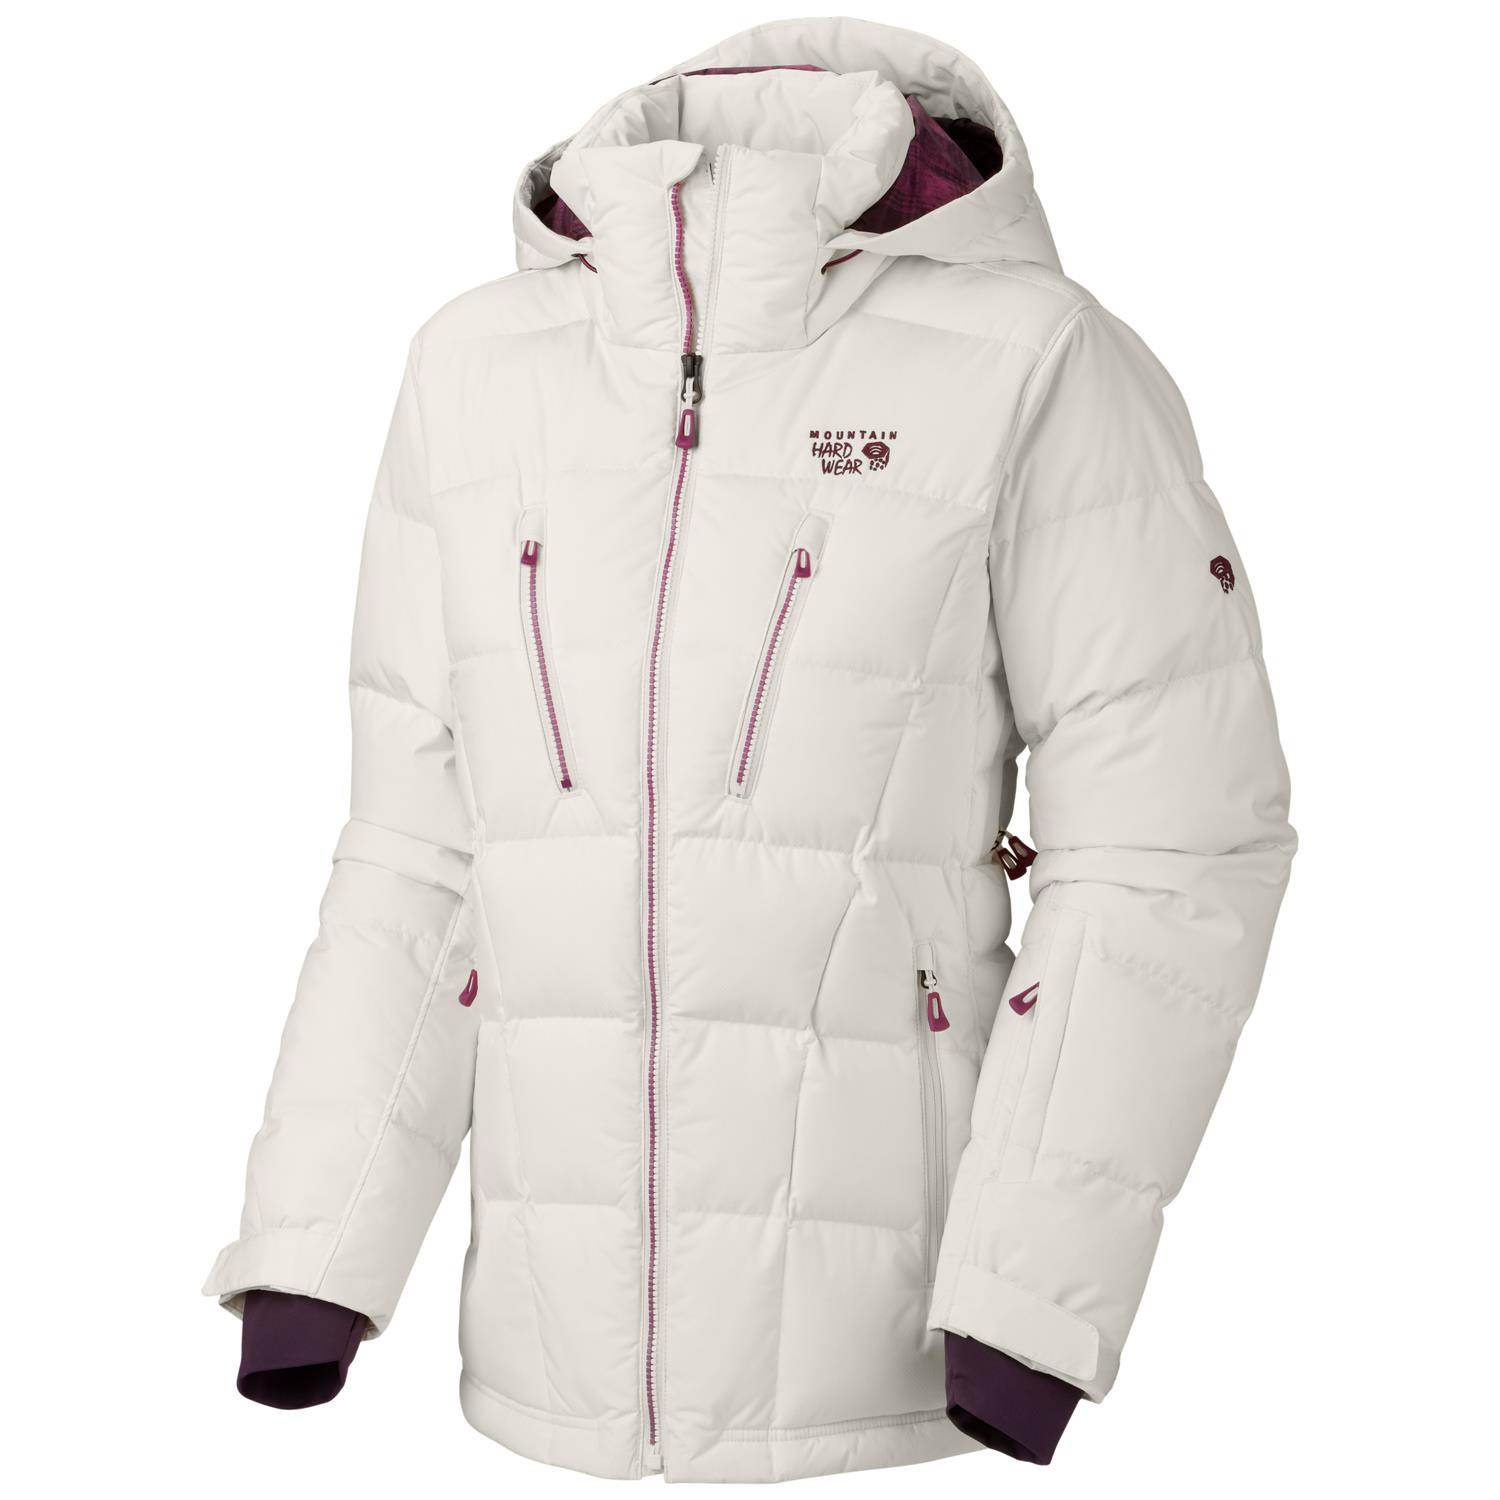 Mountain Hardwear Downhill Parka II Jacket - Women's | evo outlet